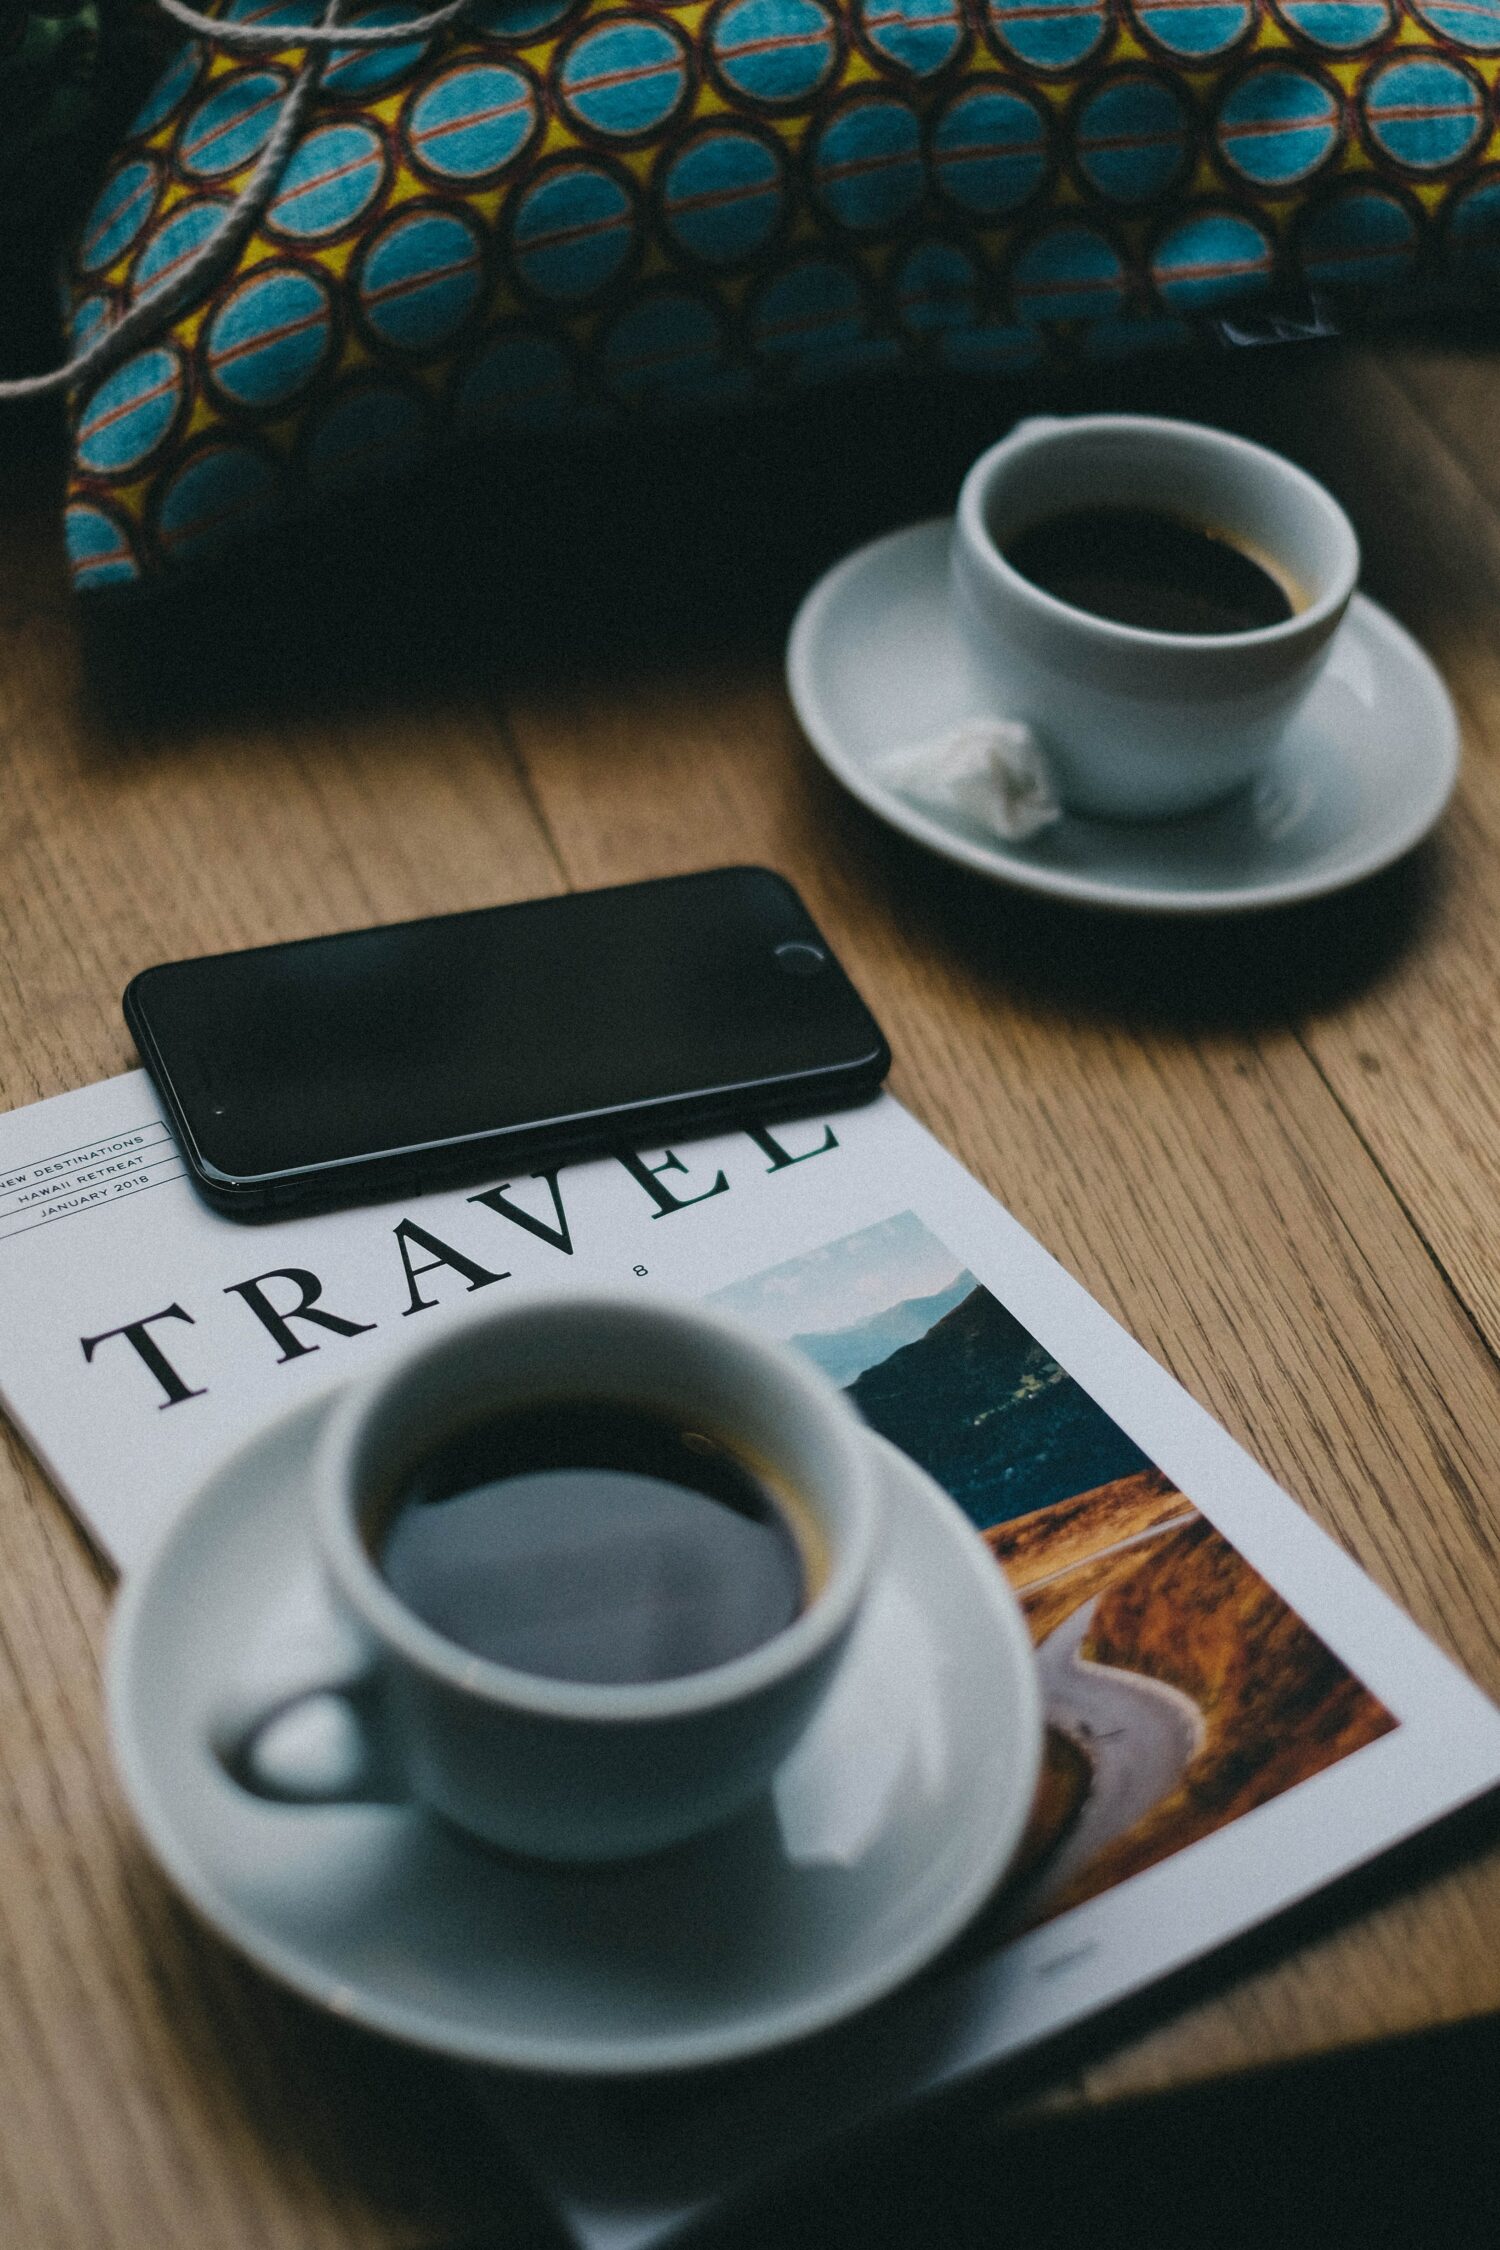 mesa de madeira com um celular android preto em cima de uma revista de viagem com duas xícaras brancas com pírex e café dentro. É usada para ilustrar a importância de contratar um chip de celular para viagem internacional